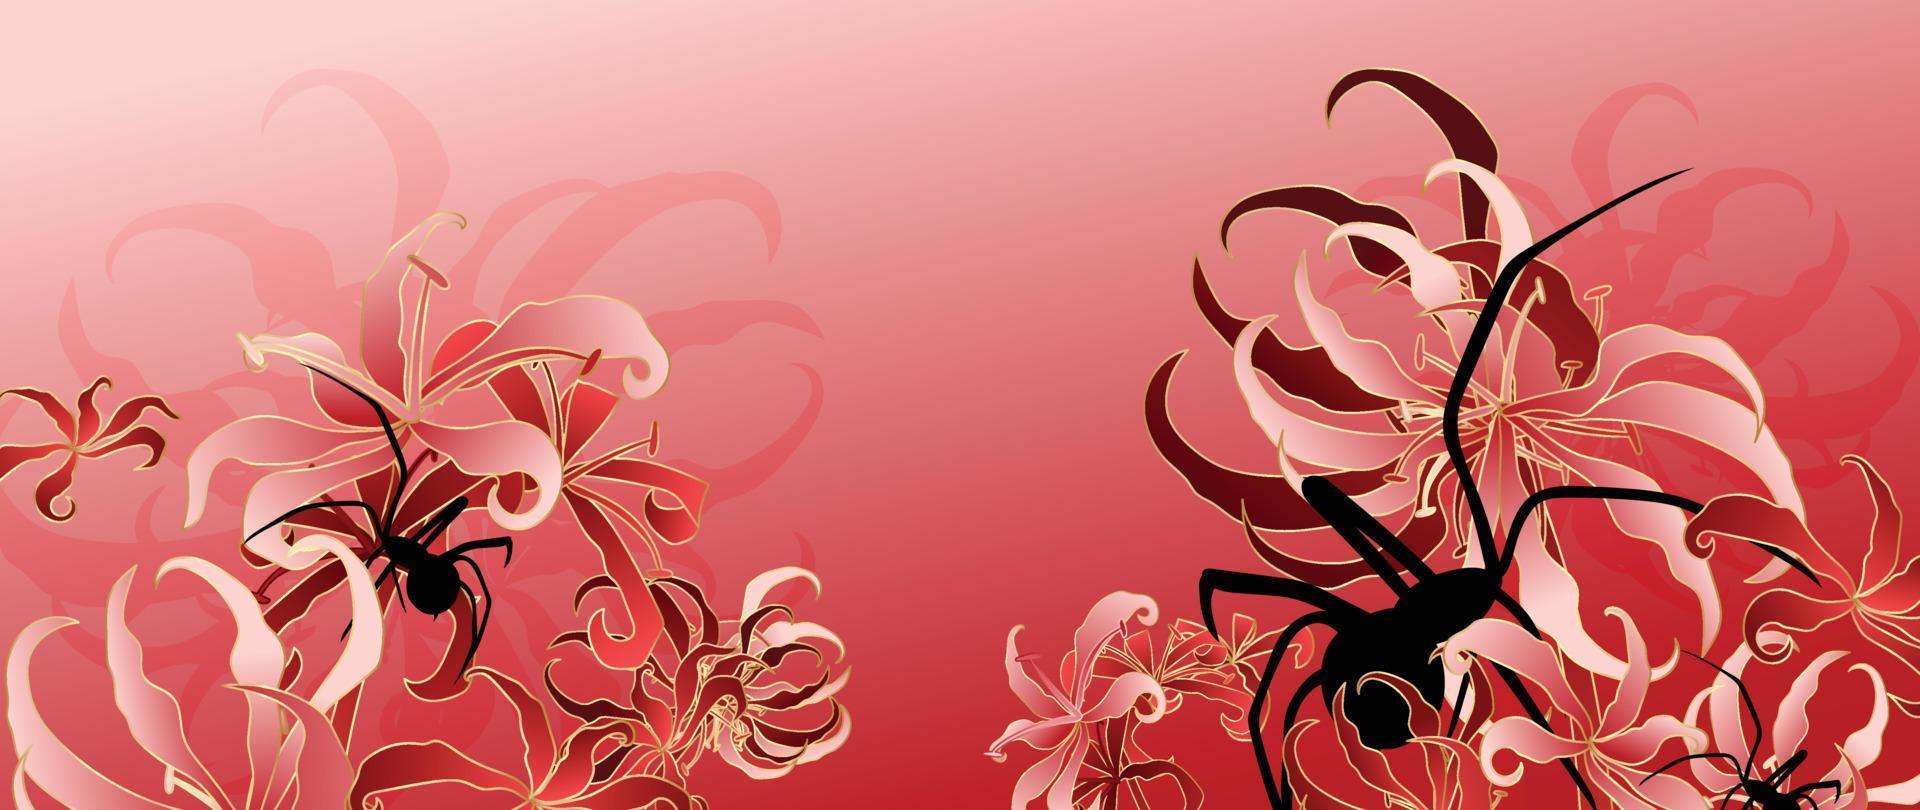 Luxus orientalisch Blume Hintergrund Vektor. elegant schwarz Spinne und Spinne Lilie golden Linie Kunst auf rot Hintergrund. Blumen- Muster Design Illustration zum Dekoration, Hintergrund, Poster, Banner, Karte. vektor